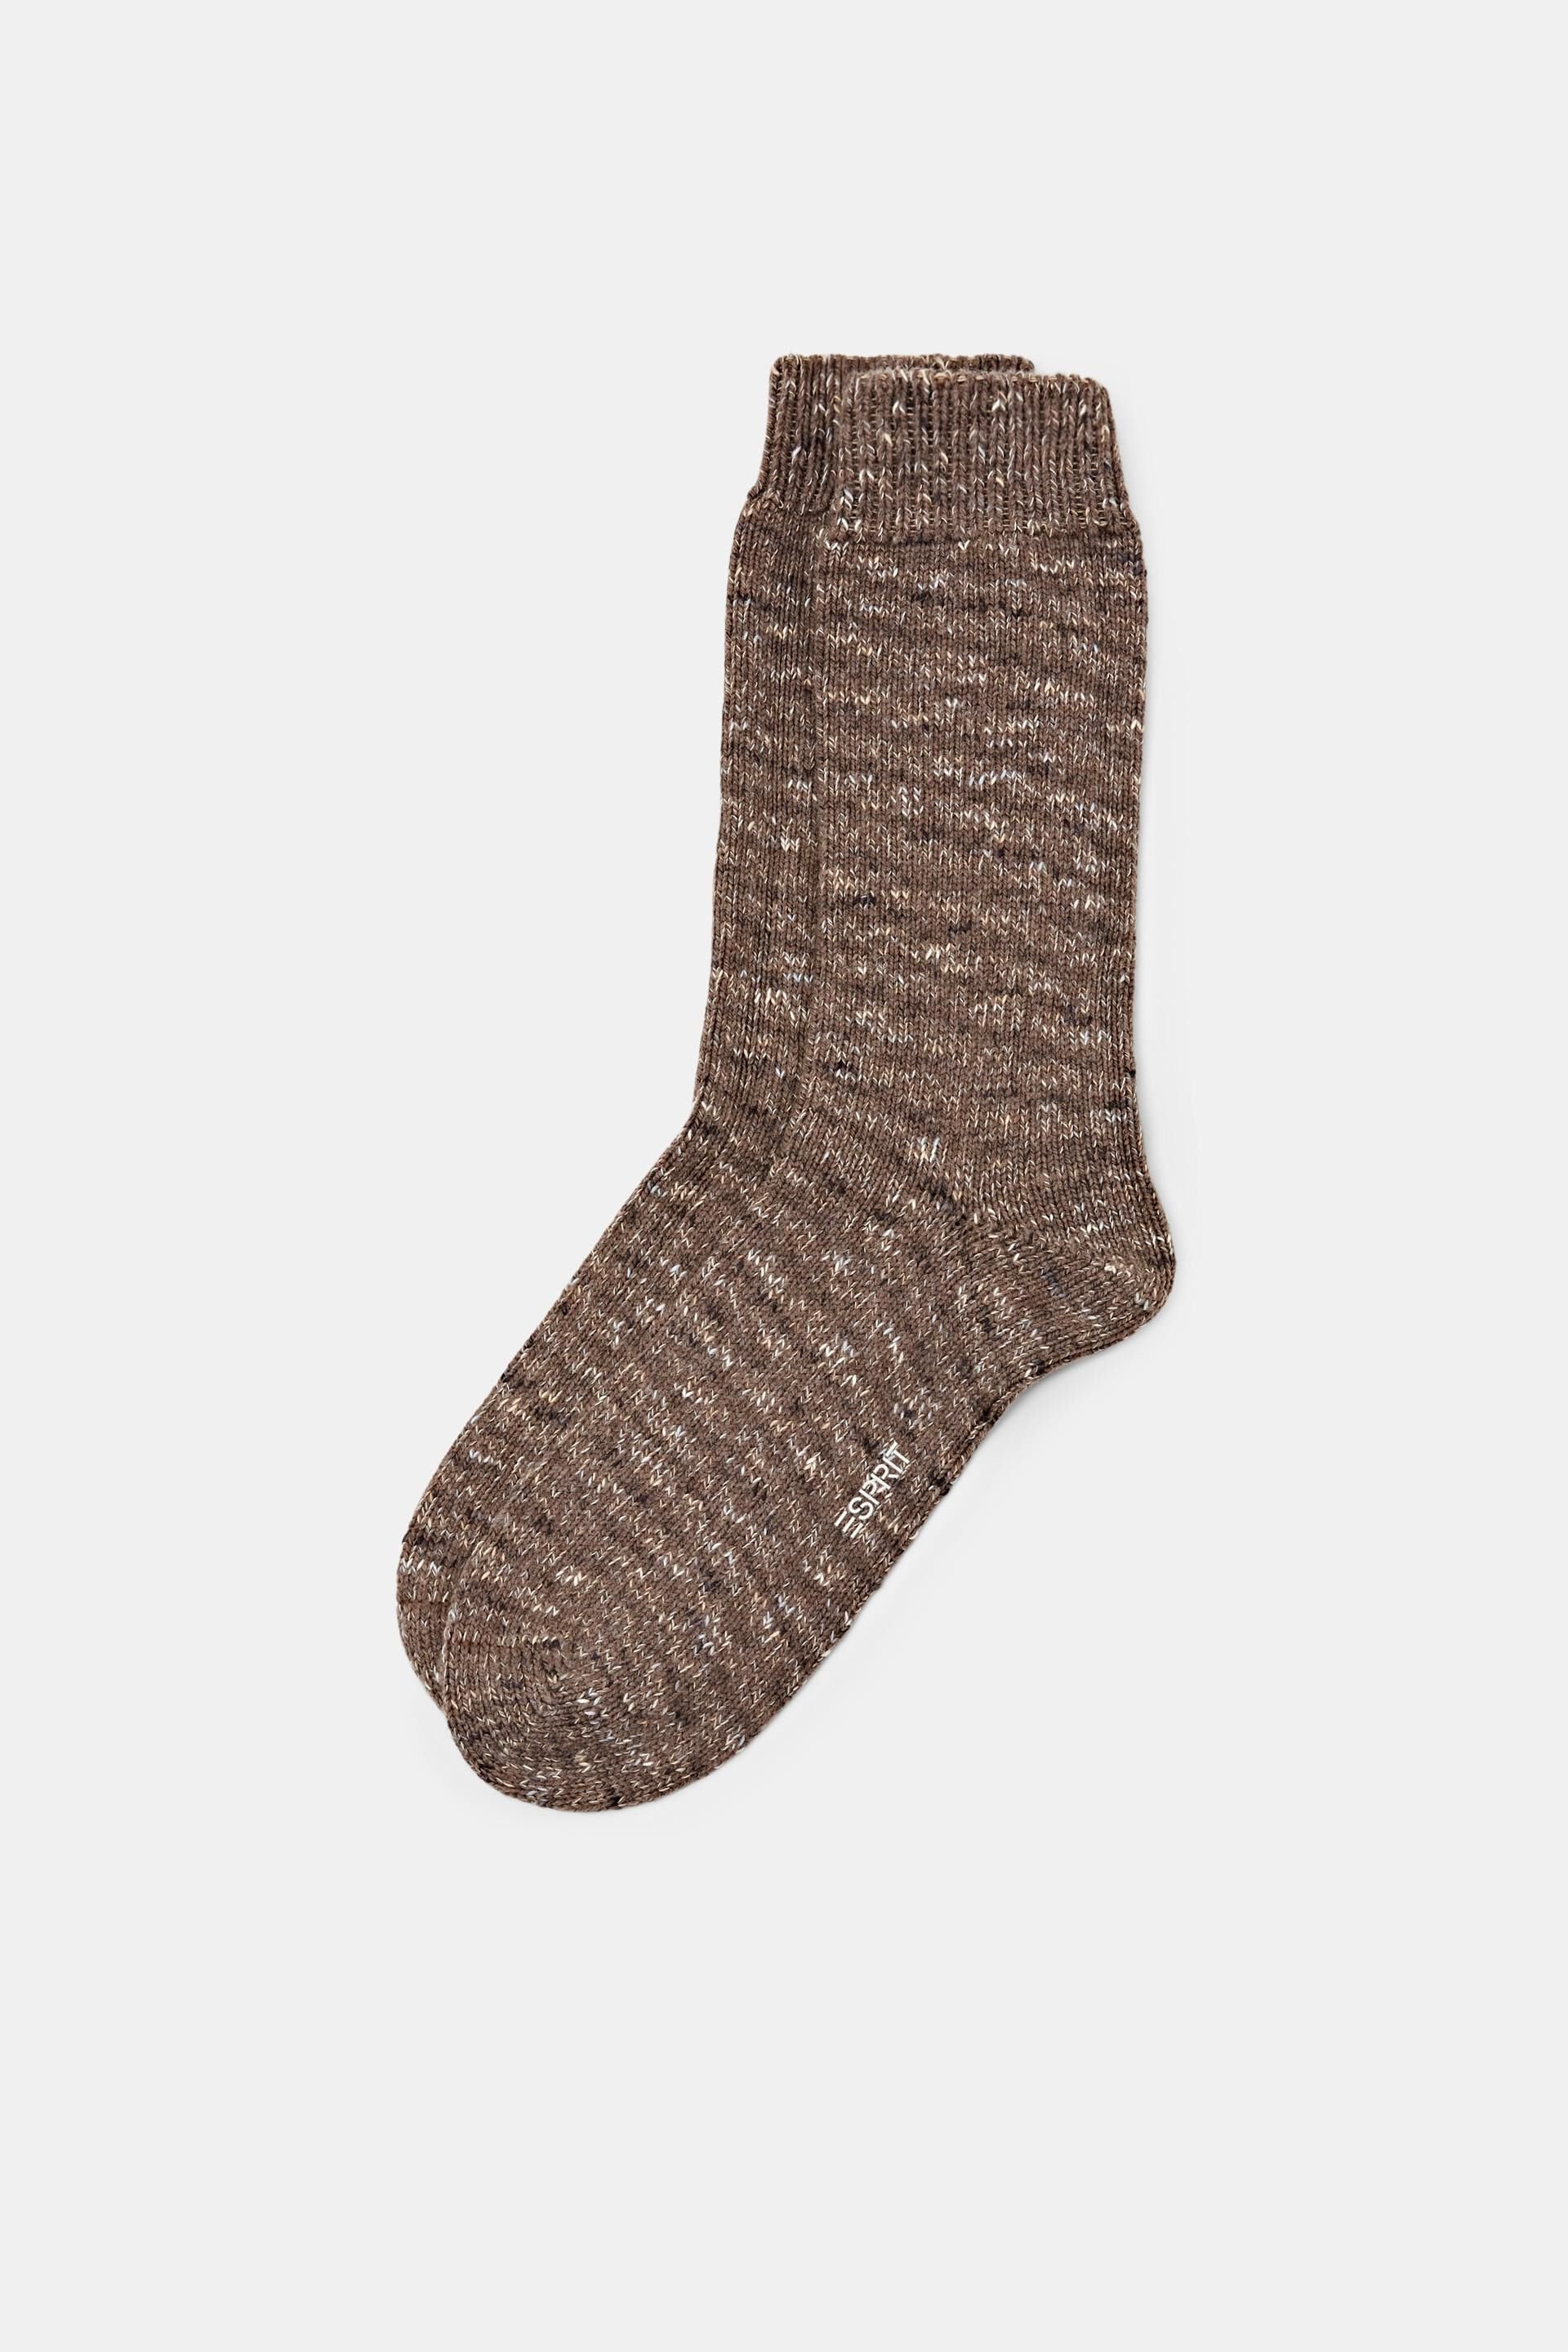 Esprit boot socks Chunky knit